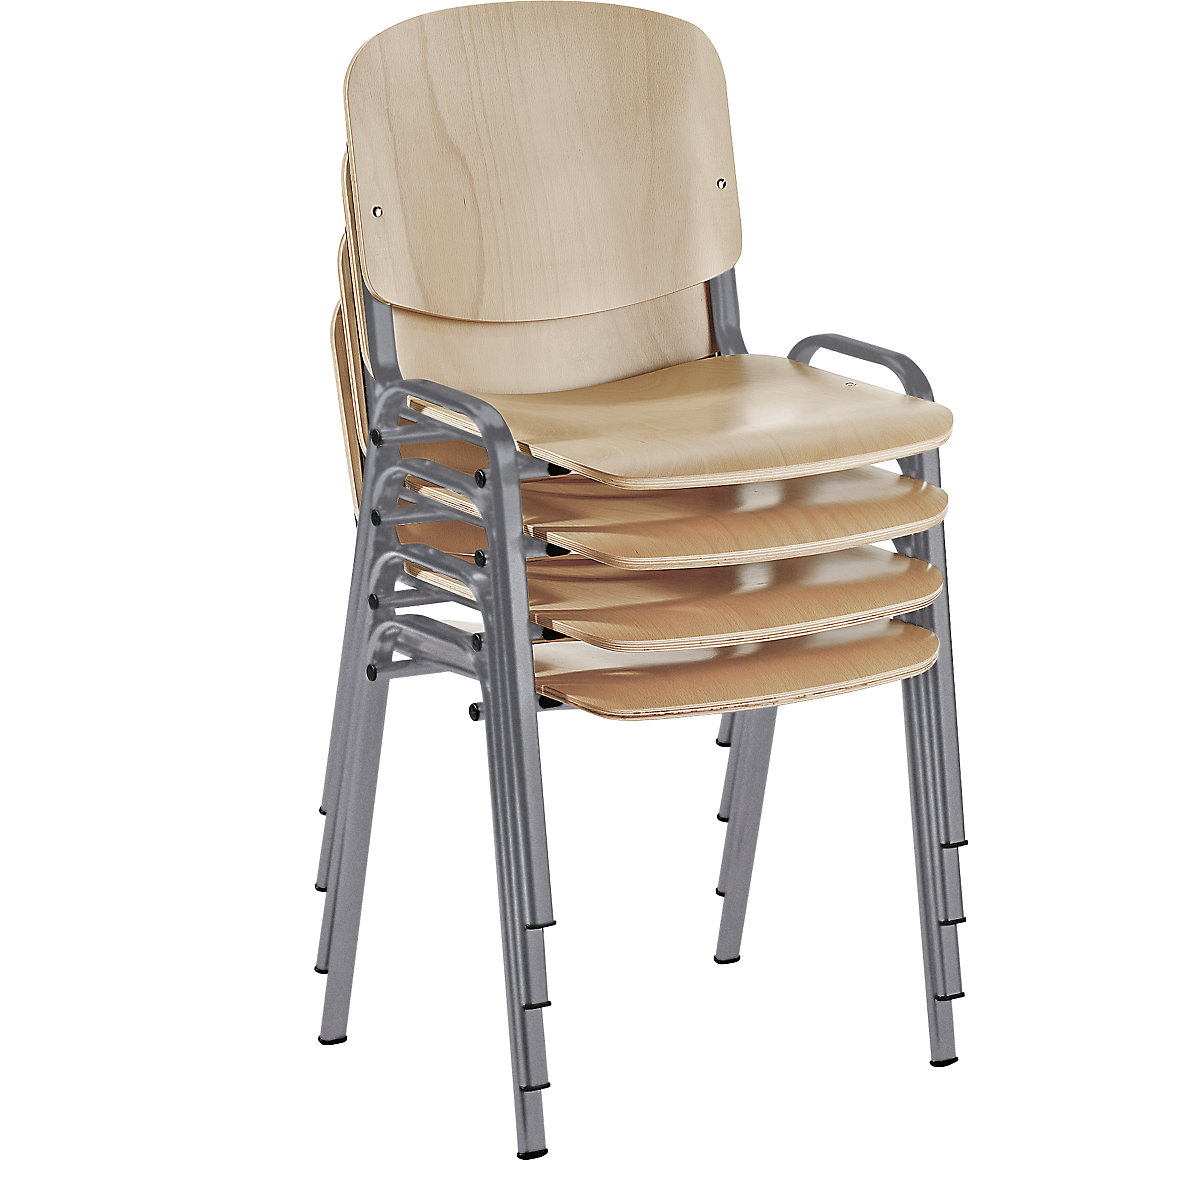 Egymásra rakható szék, ergonómikus kialakítás